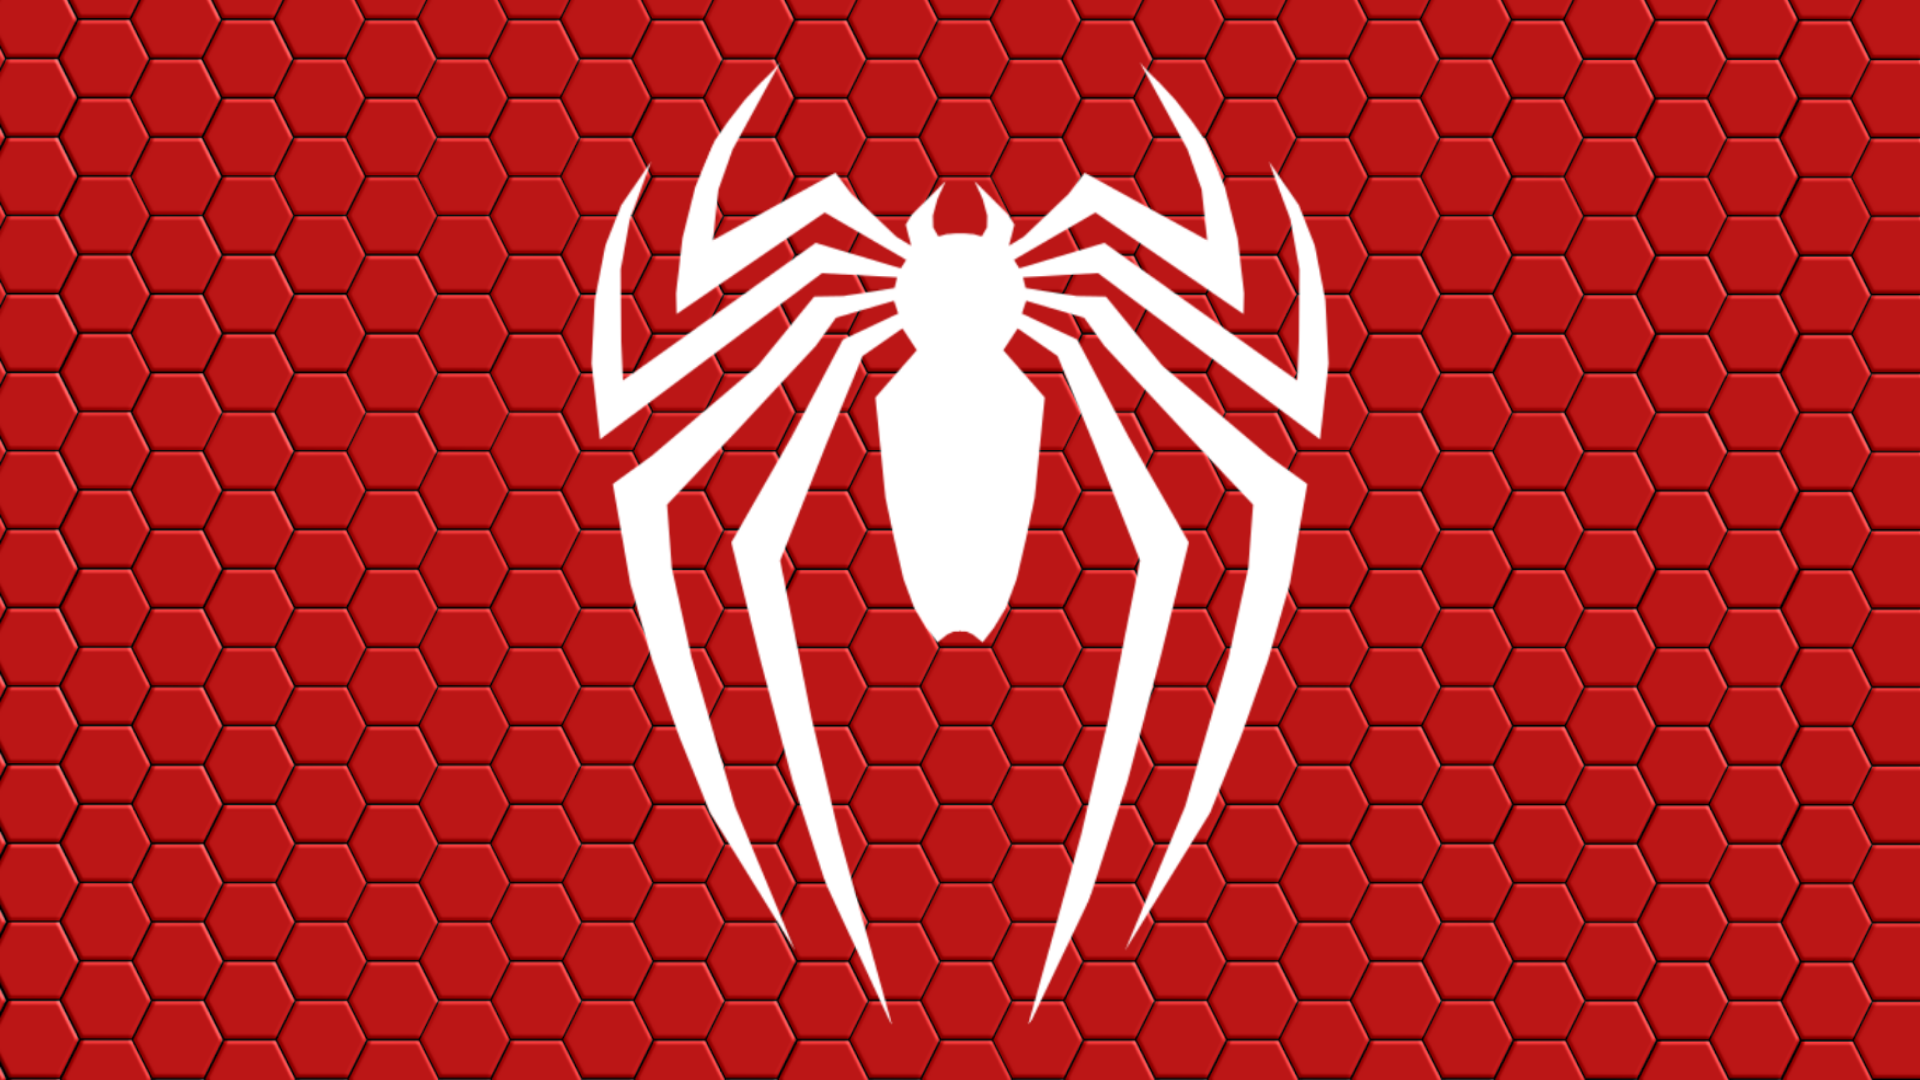 Spider-Man PS4 New Logo Wallpaper